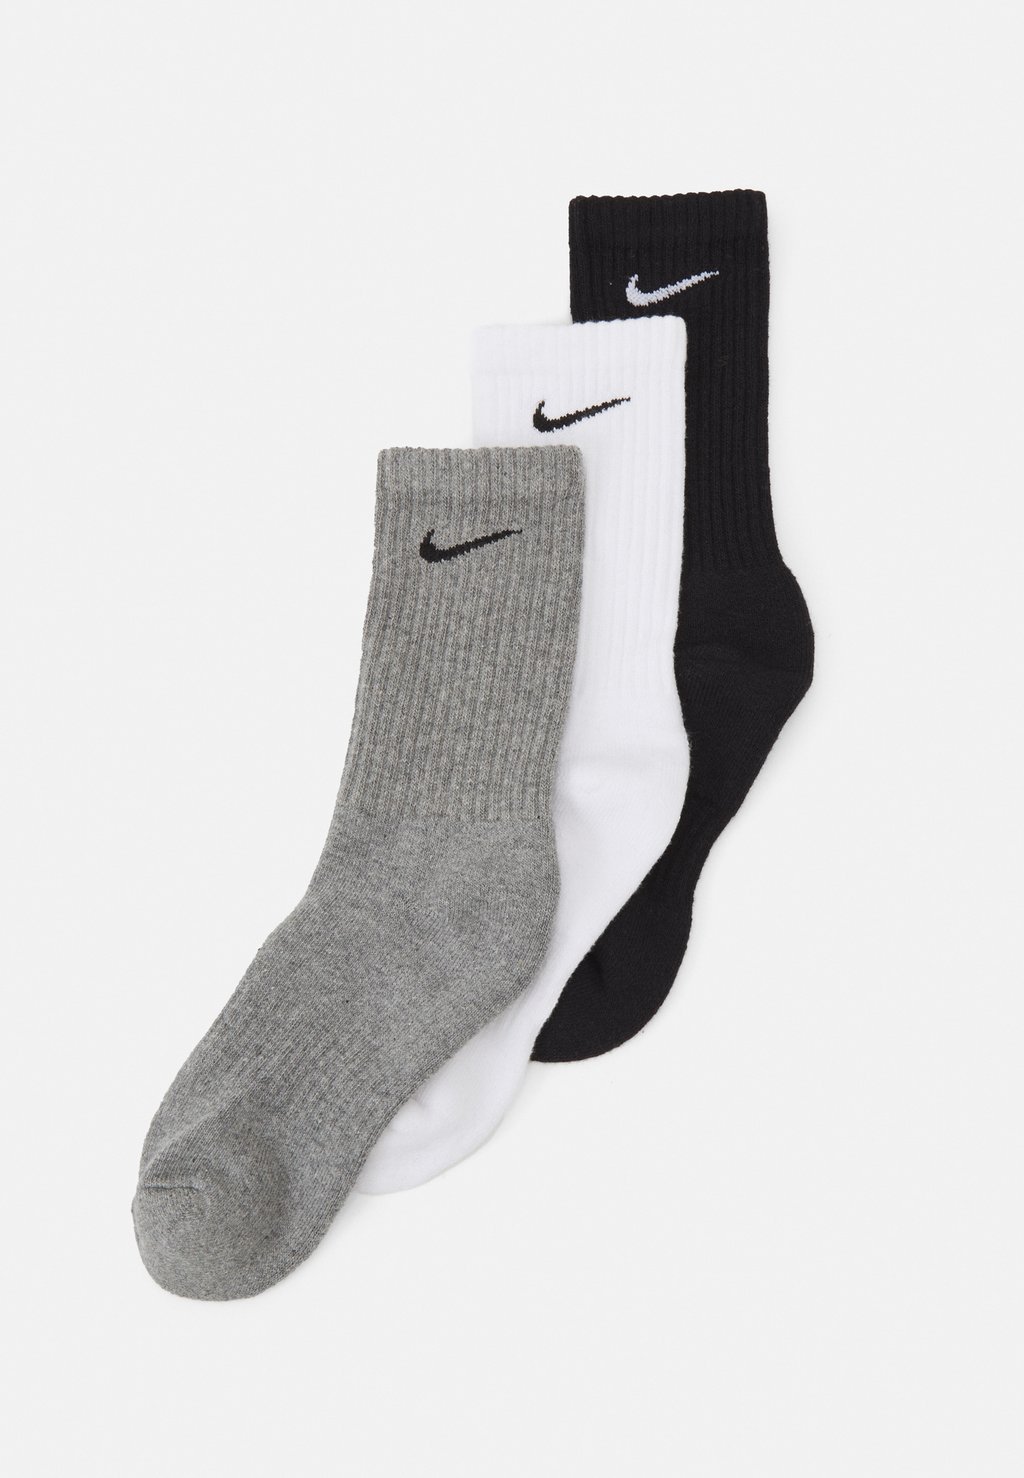 Спортивные носки Nike Everyday Cush Crew 3 Pack, белый/бежевый/черный